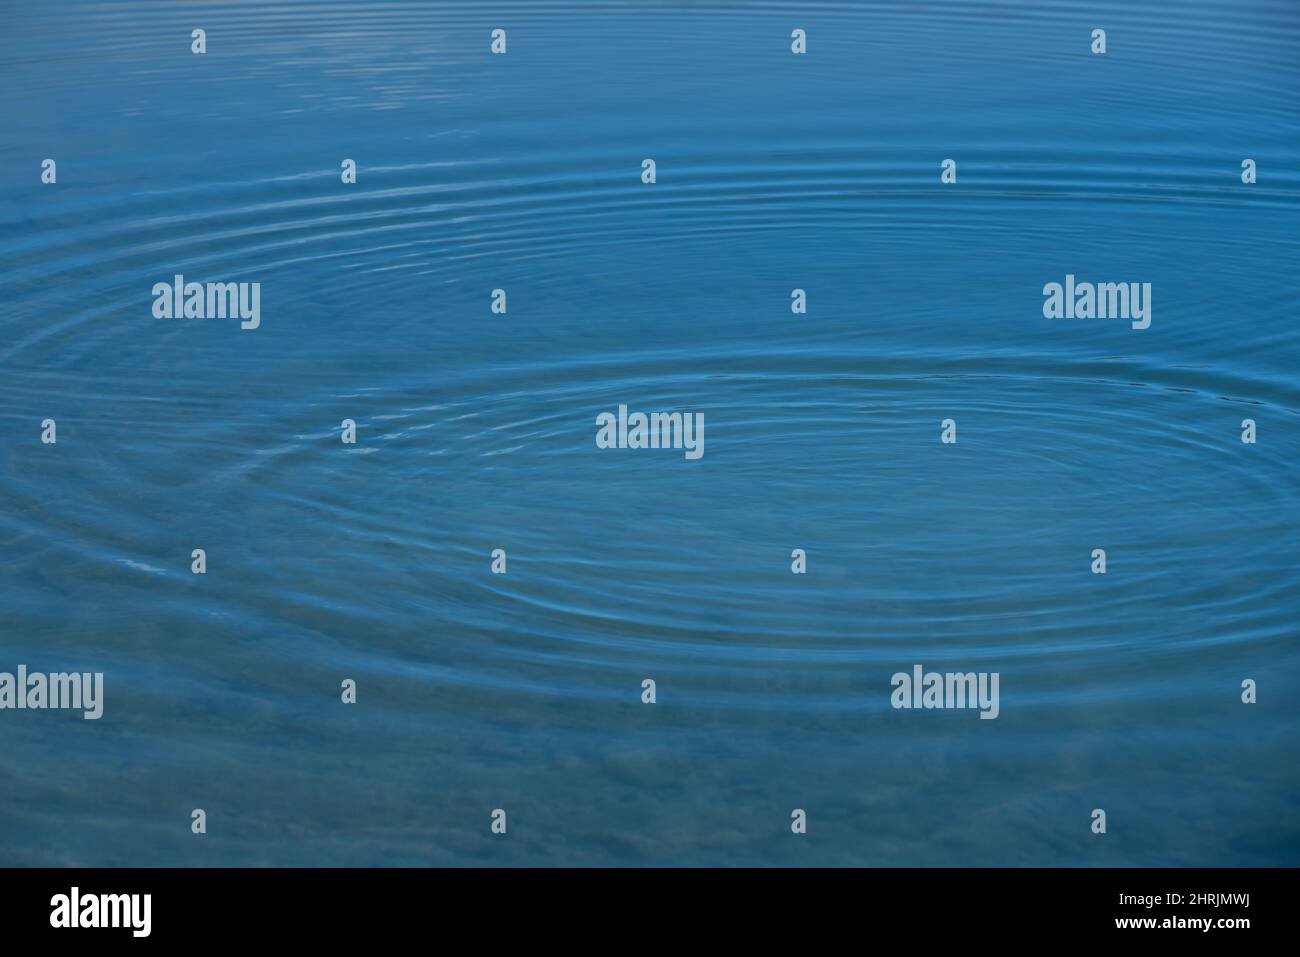 Hintergrund von der Oberfläche eines Wasserkörpers, auf dem sich kleine Wellen im Kreis ausbreiten, im blauen Wasser Stockfoto